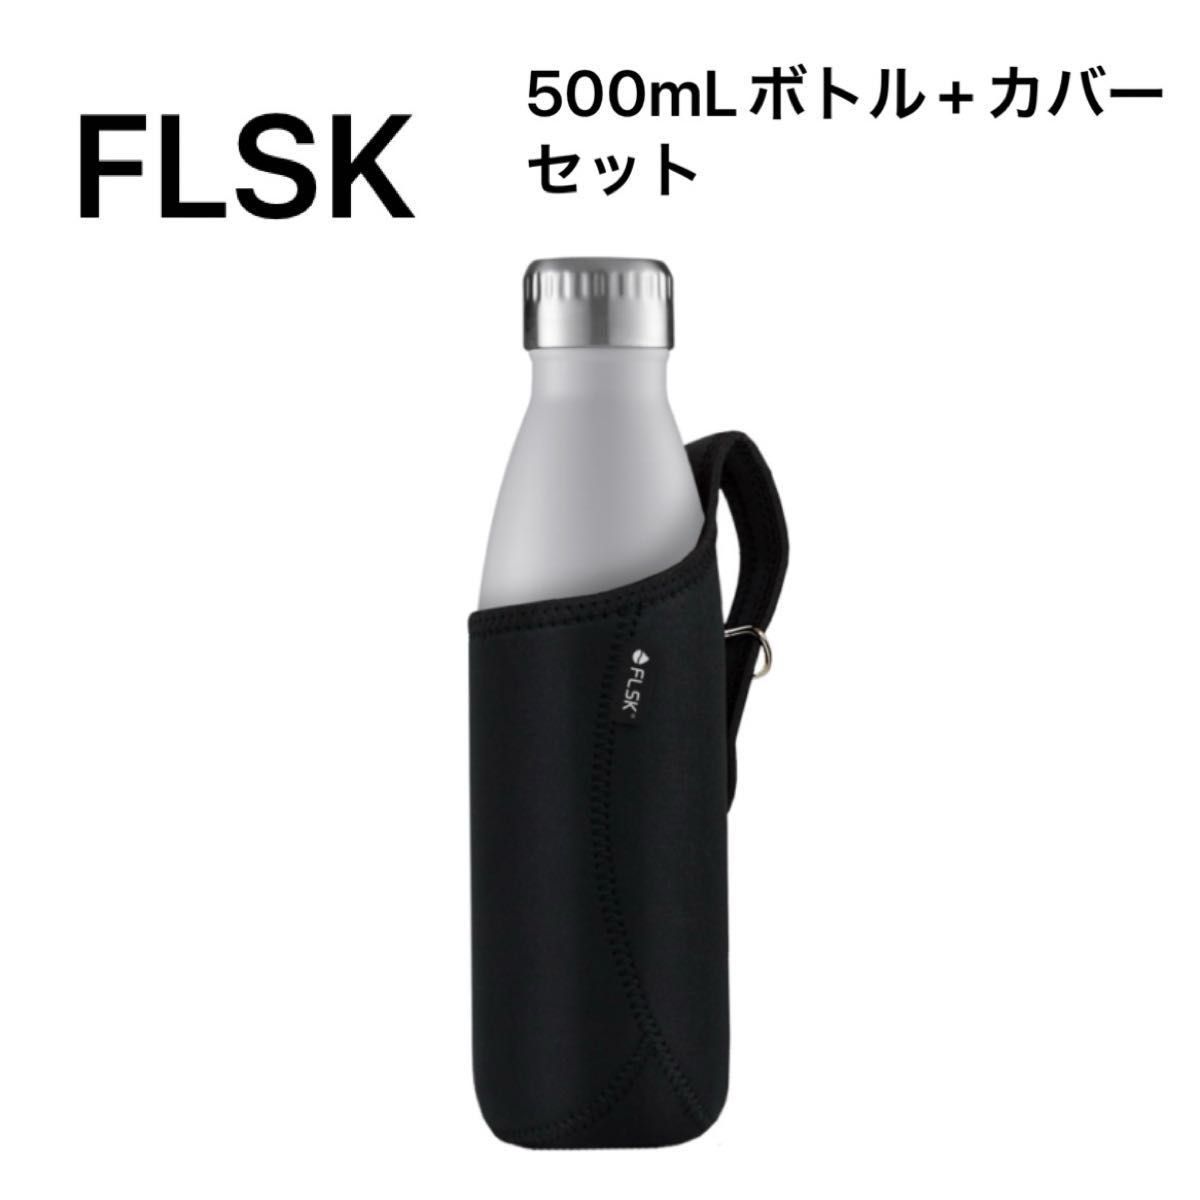 FLSK フラスク 炭酸対応 ステンレスボトル 500mL ボトルカバー セット 水筒 保温 保冷 魔法瓶 ドイツ 炭酸OK 